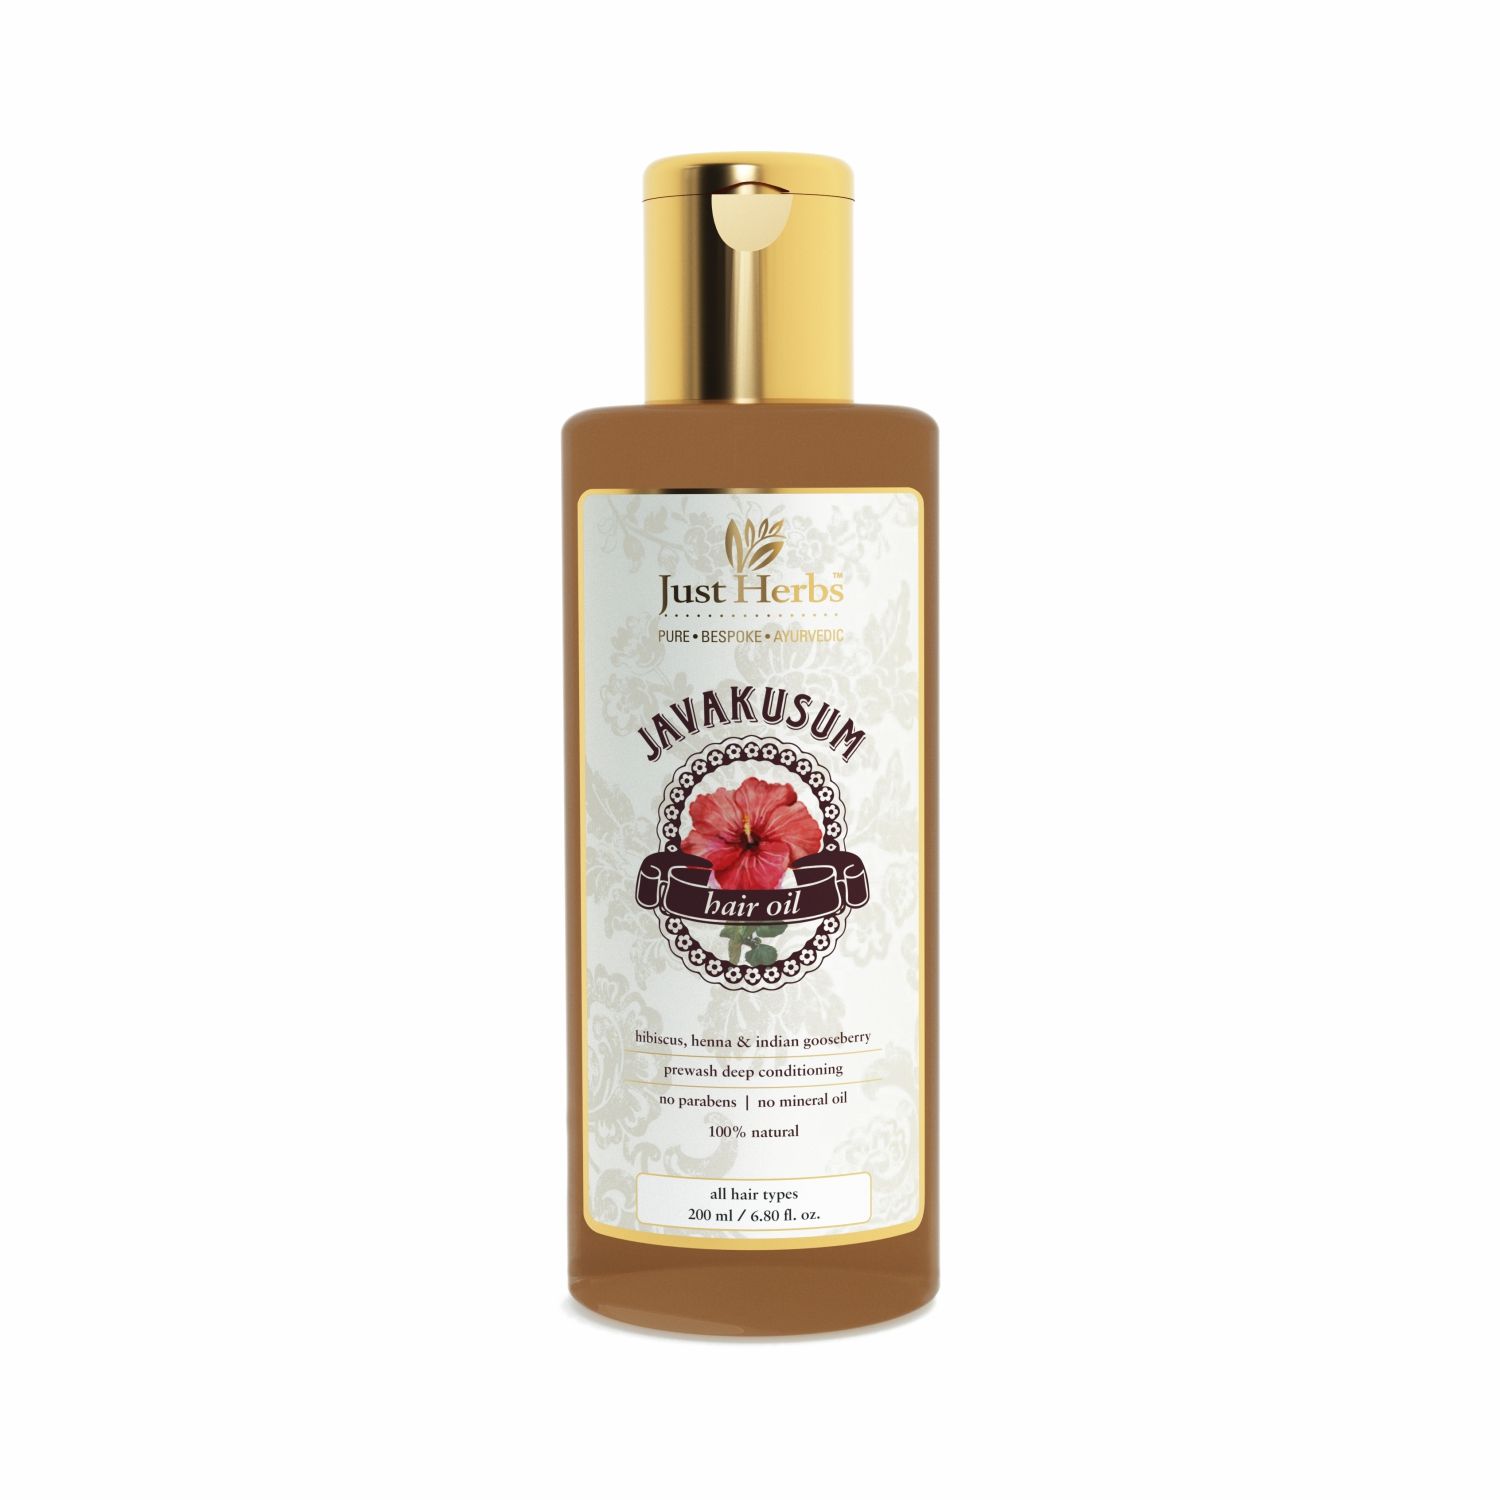 Buy Just Herbs Javakusum Hair Oil Online at Best Price of Rs 255  bigbasket